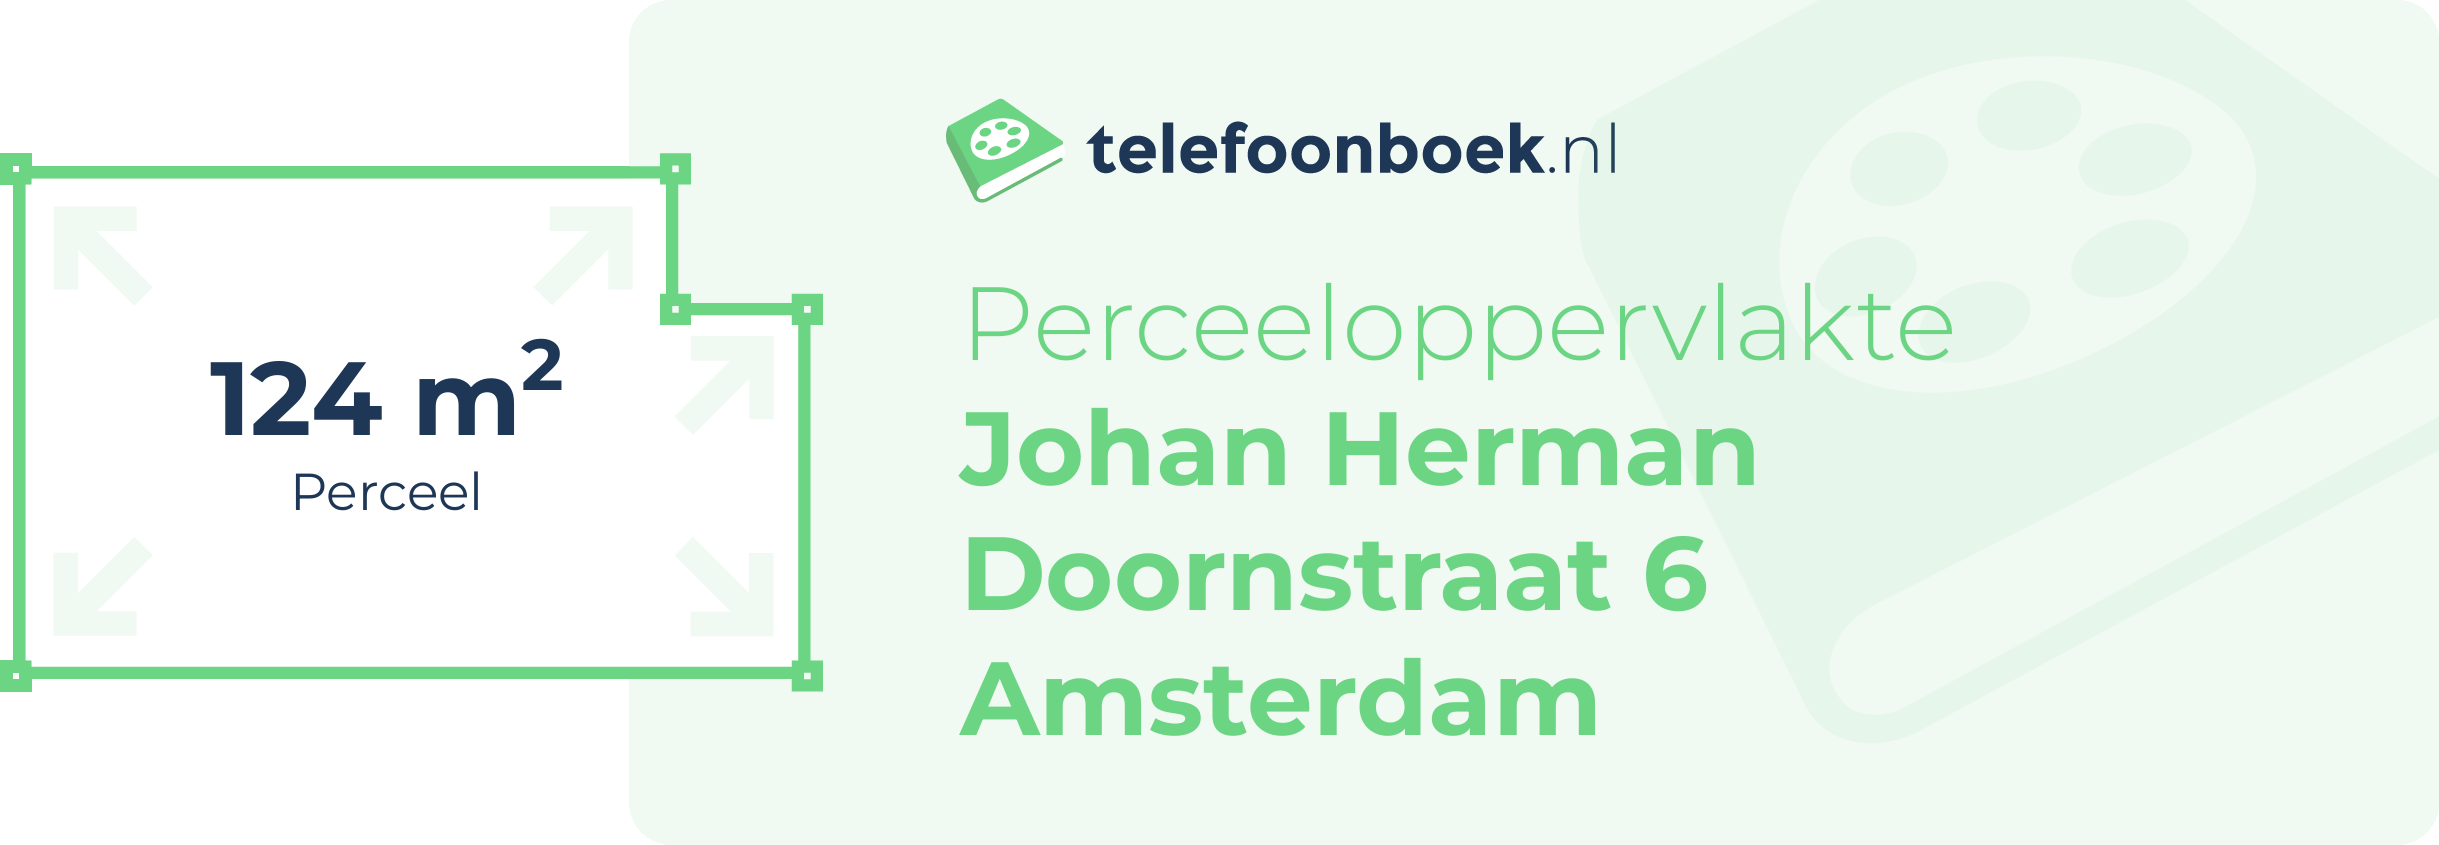 Perceeloppervlakte Johan Herman Doornstraat 6 Amsterdam